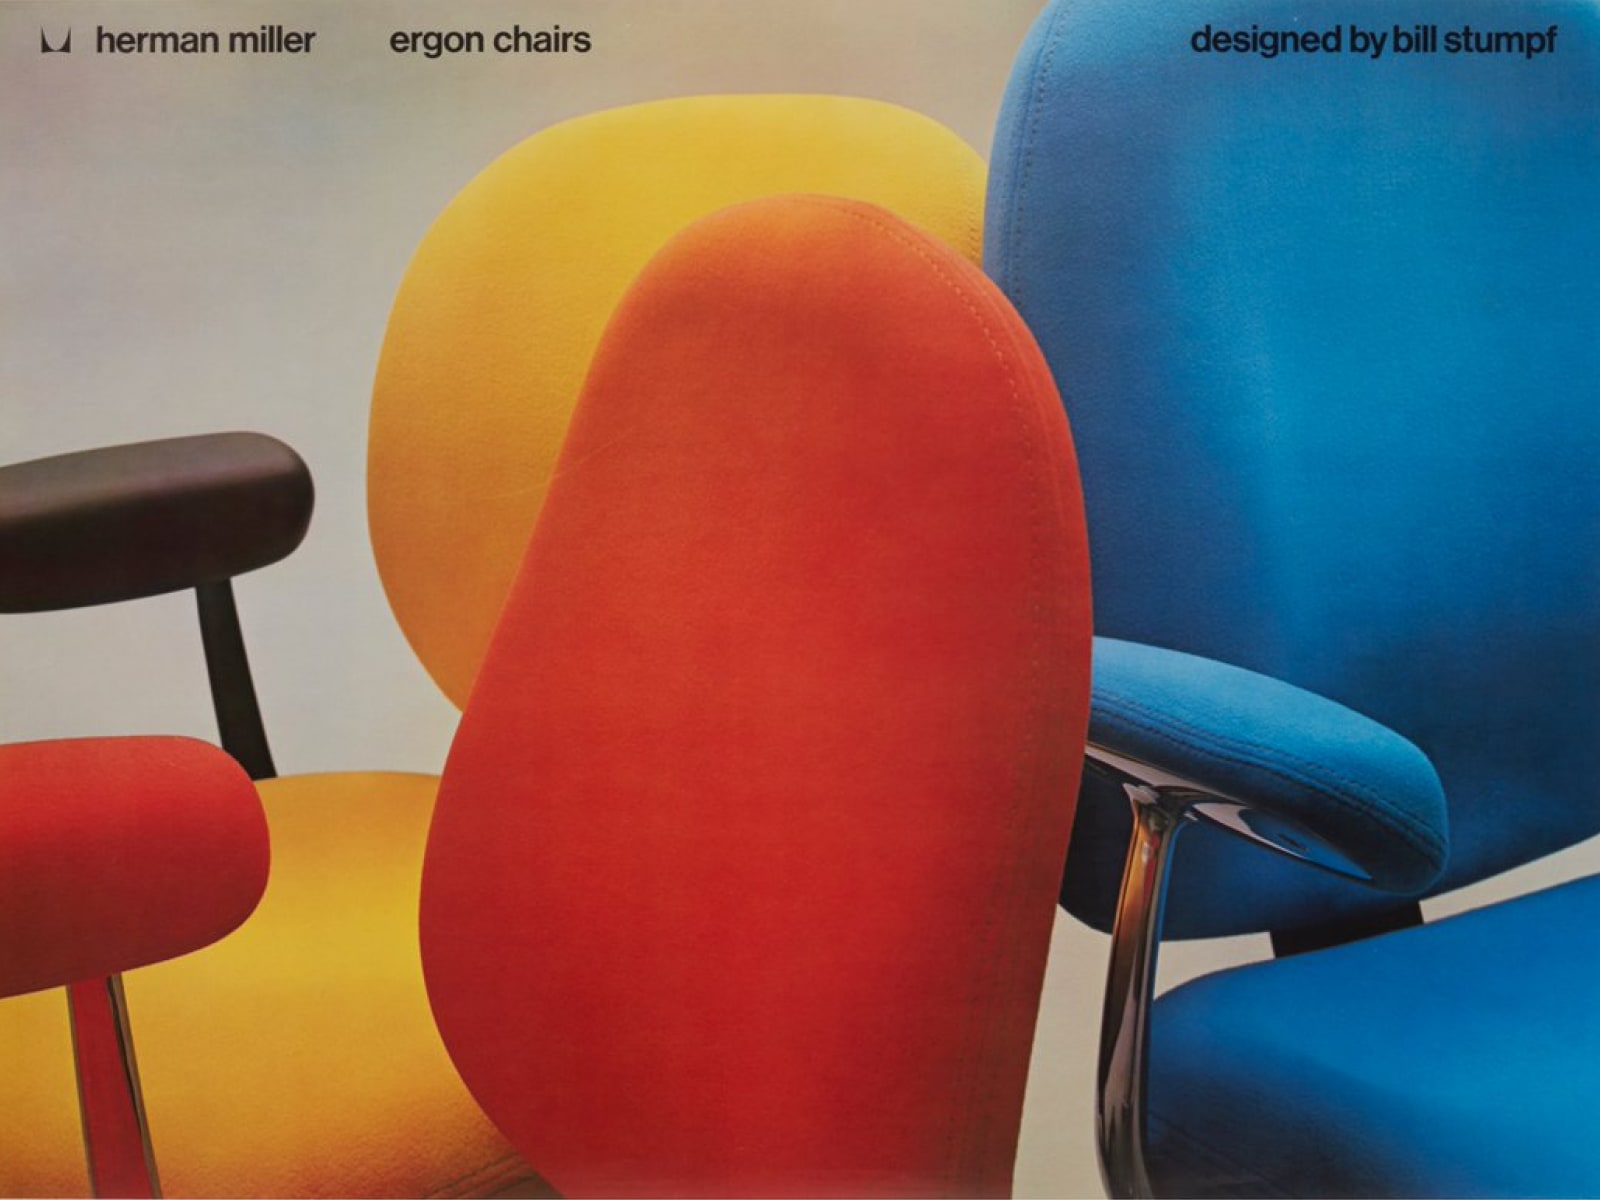 Tres sillas Ergon presentadas en rojo, amarillo y azul.